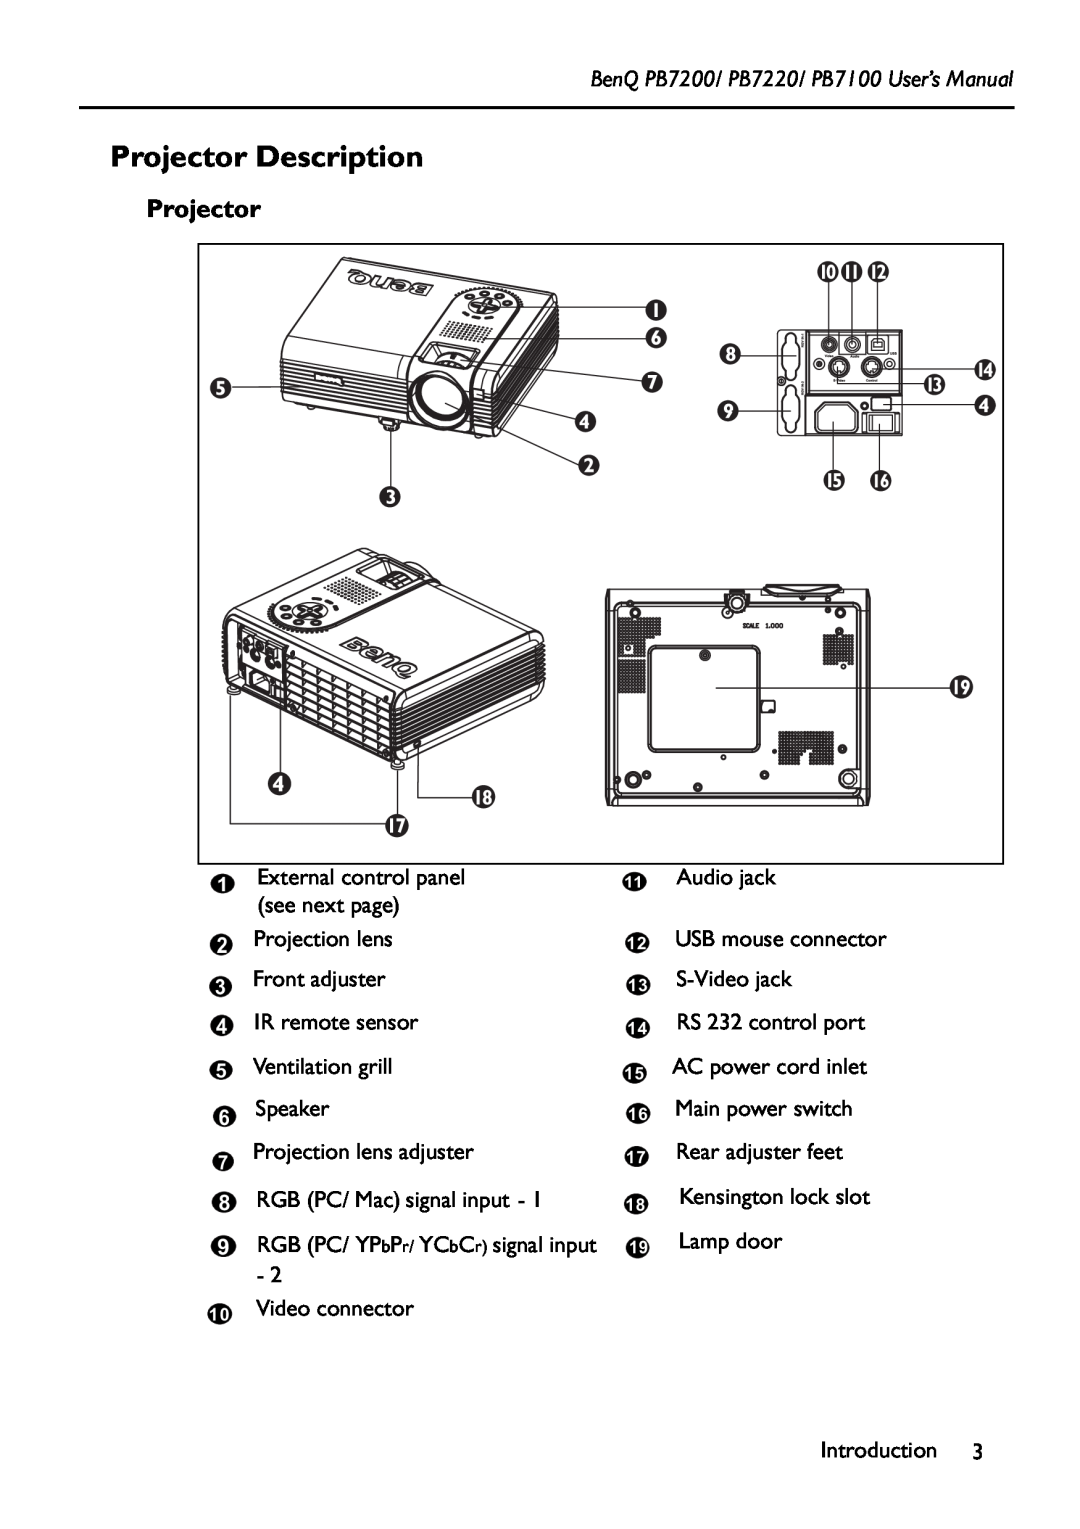 BenQ manual Projector Description, BenQ PB7200/ PB7220/ PB7100 User’s Manual 